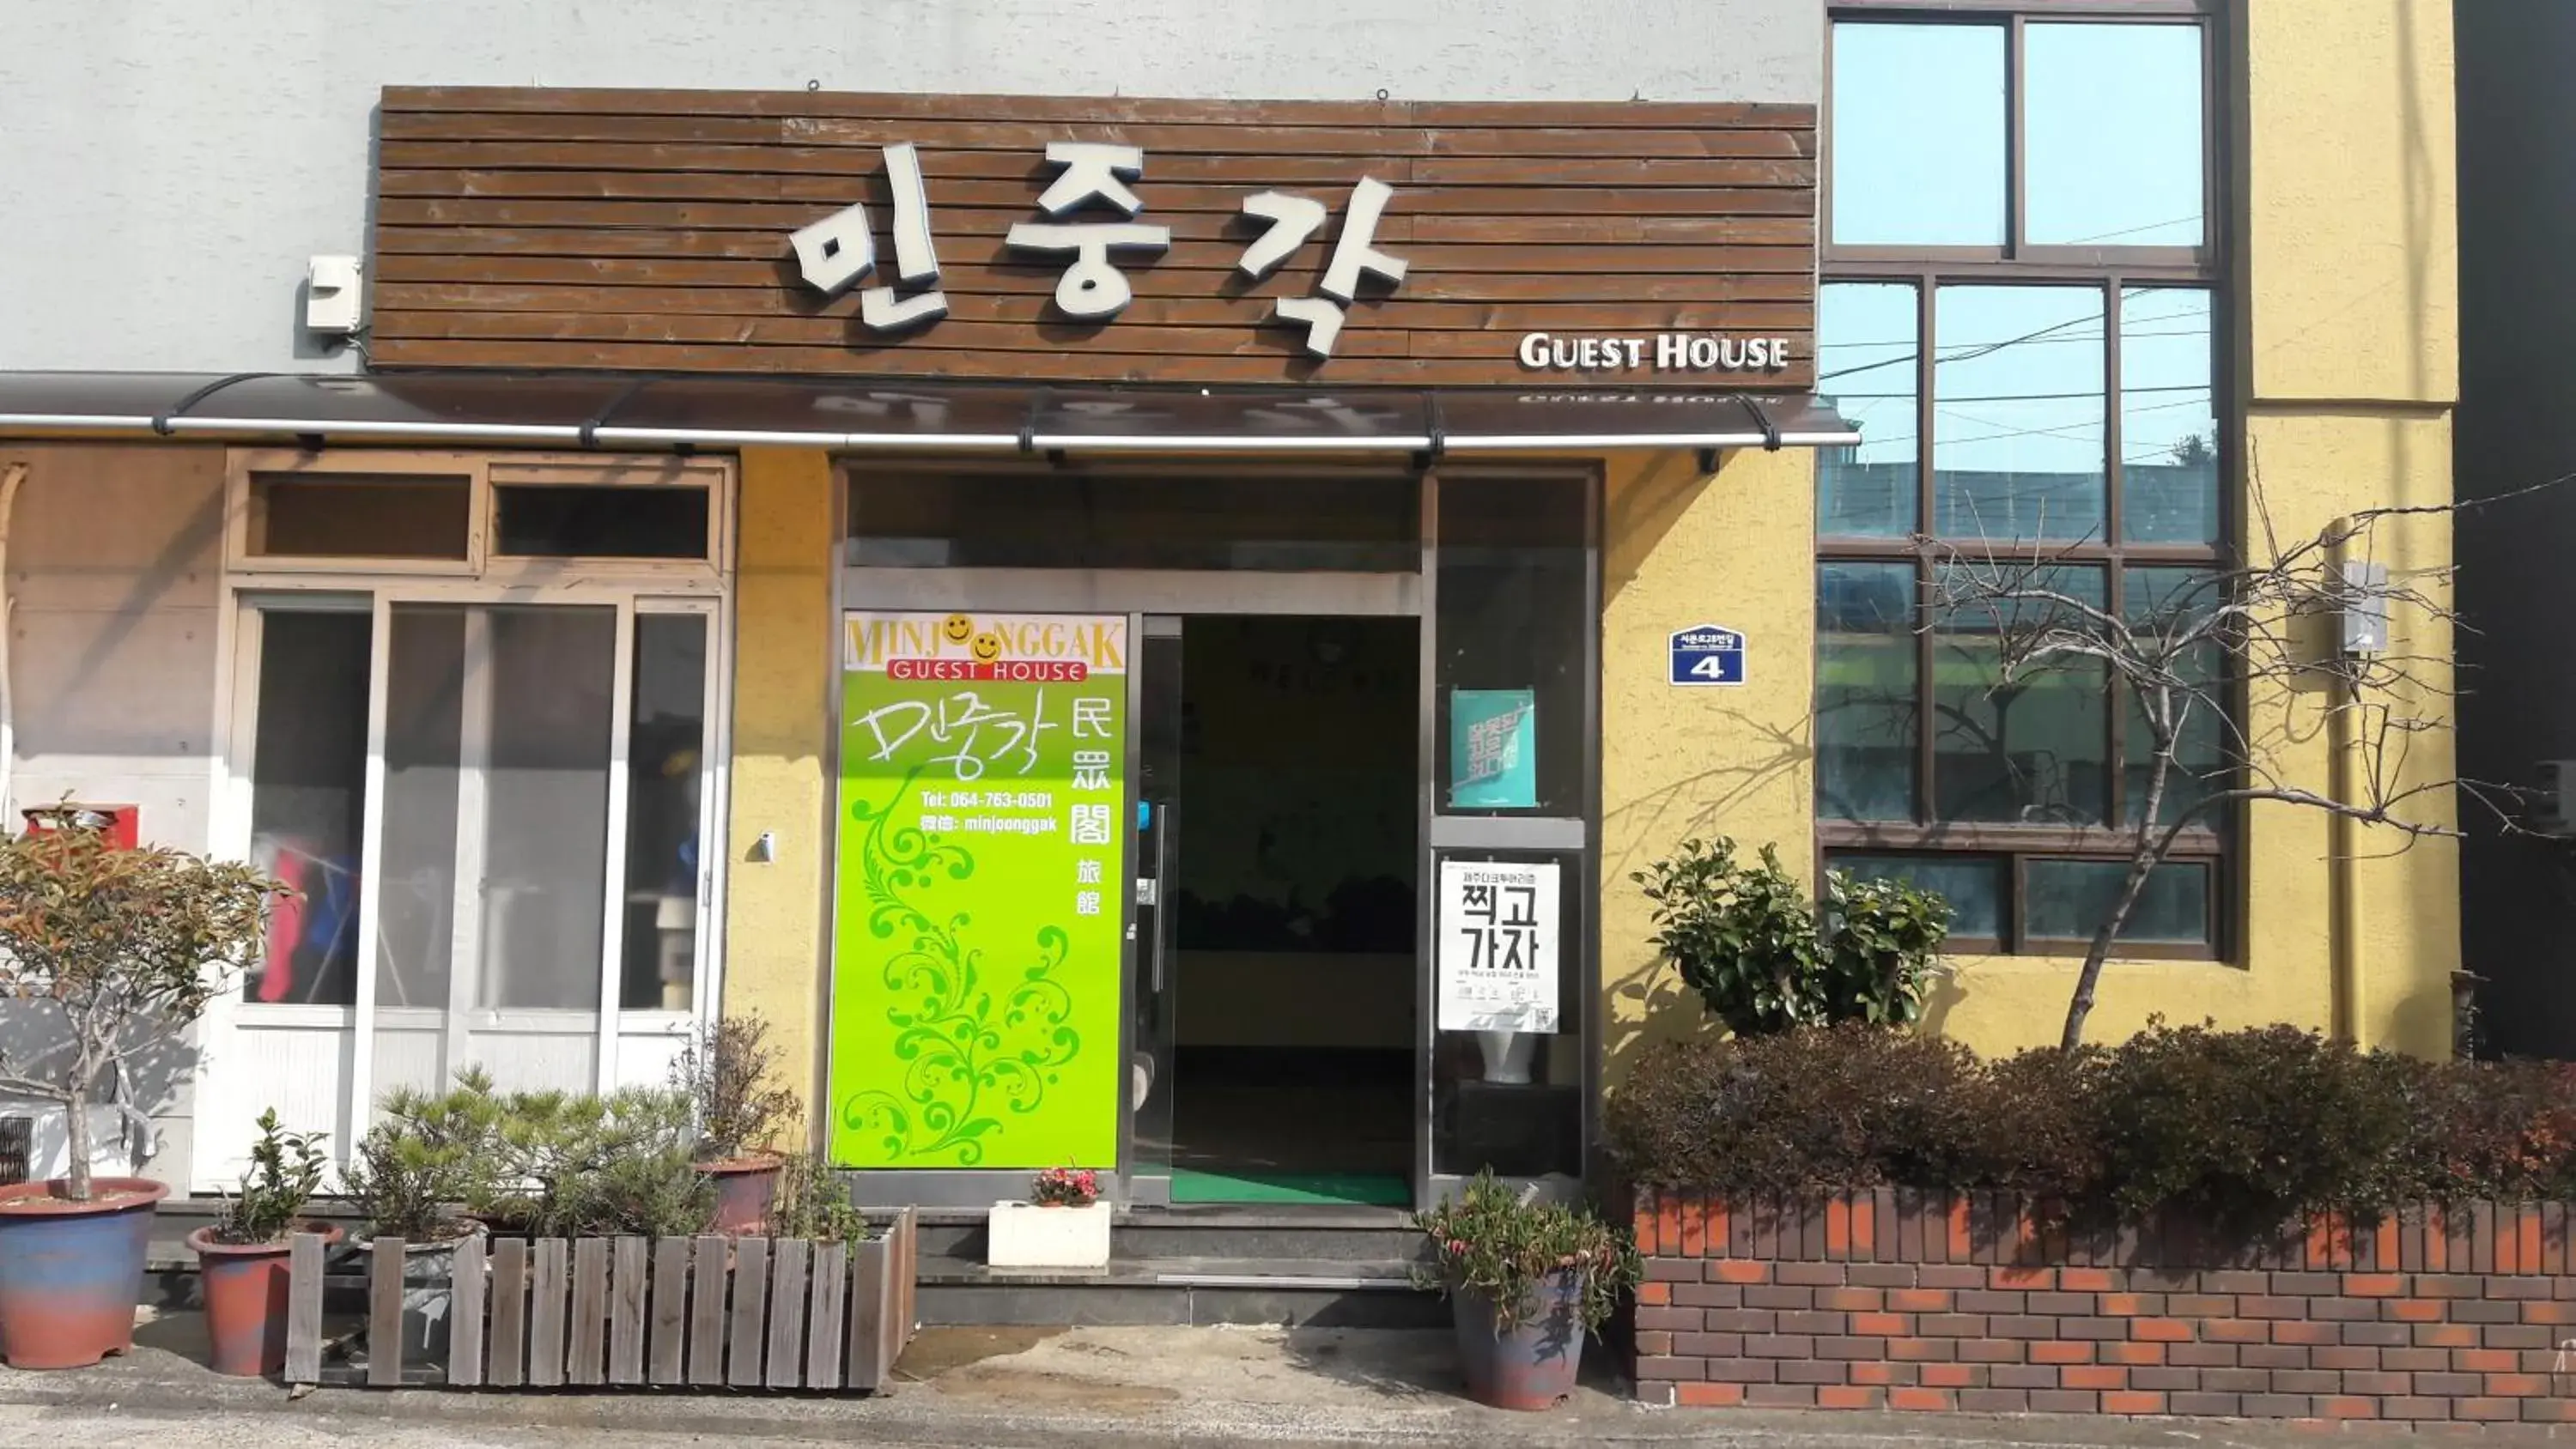 Facade/entrance in Minjoonggak Guesthouse